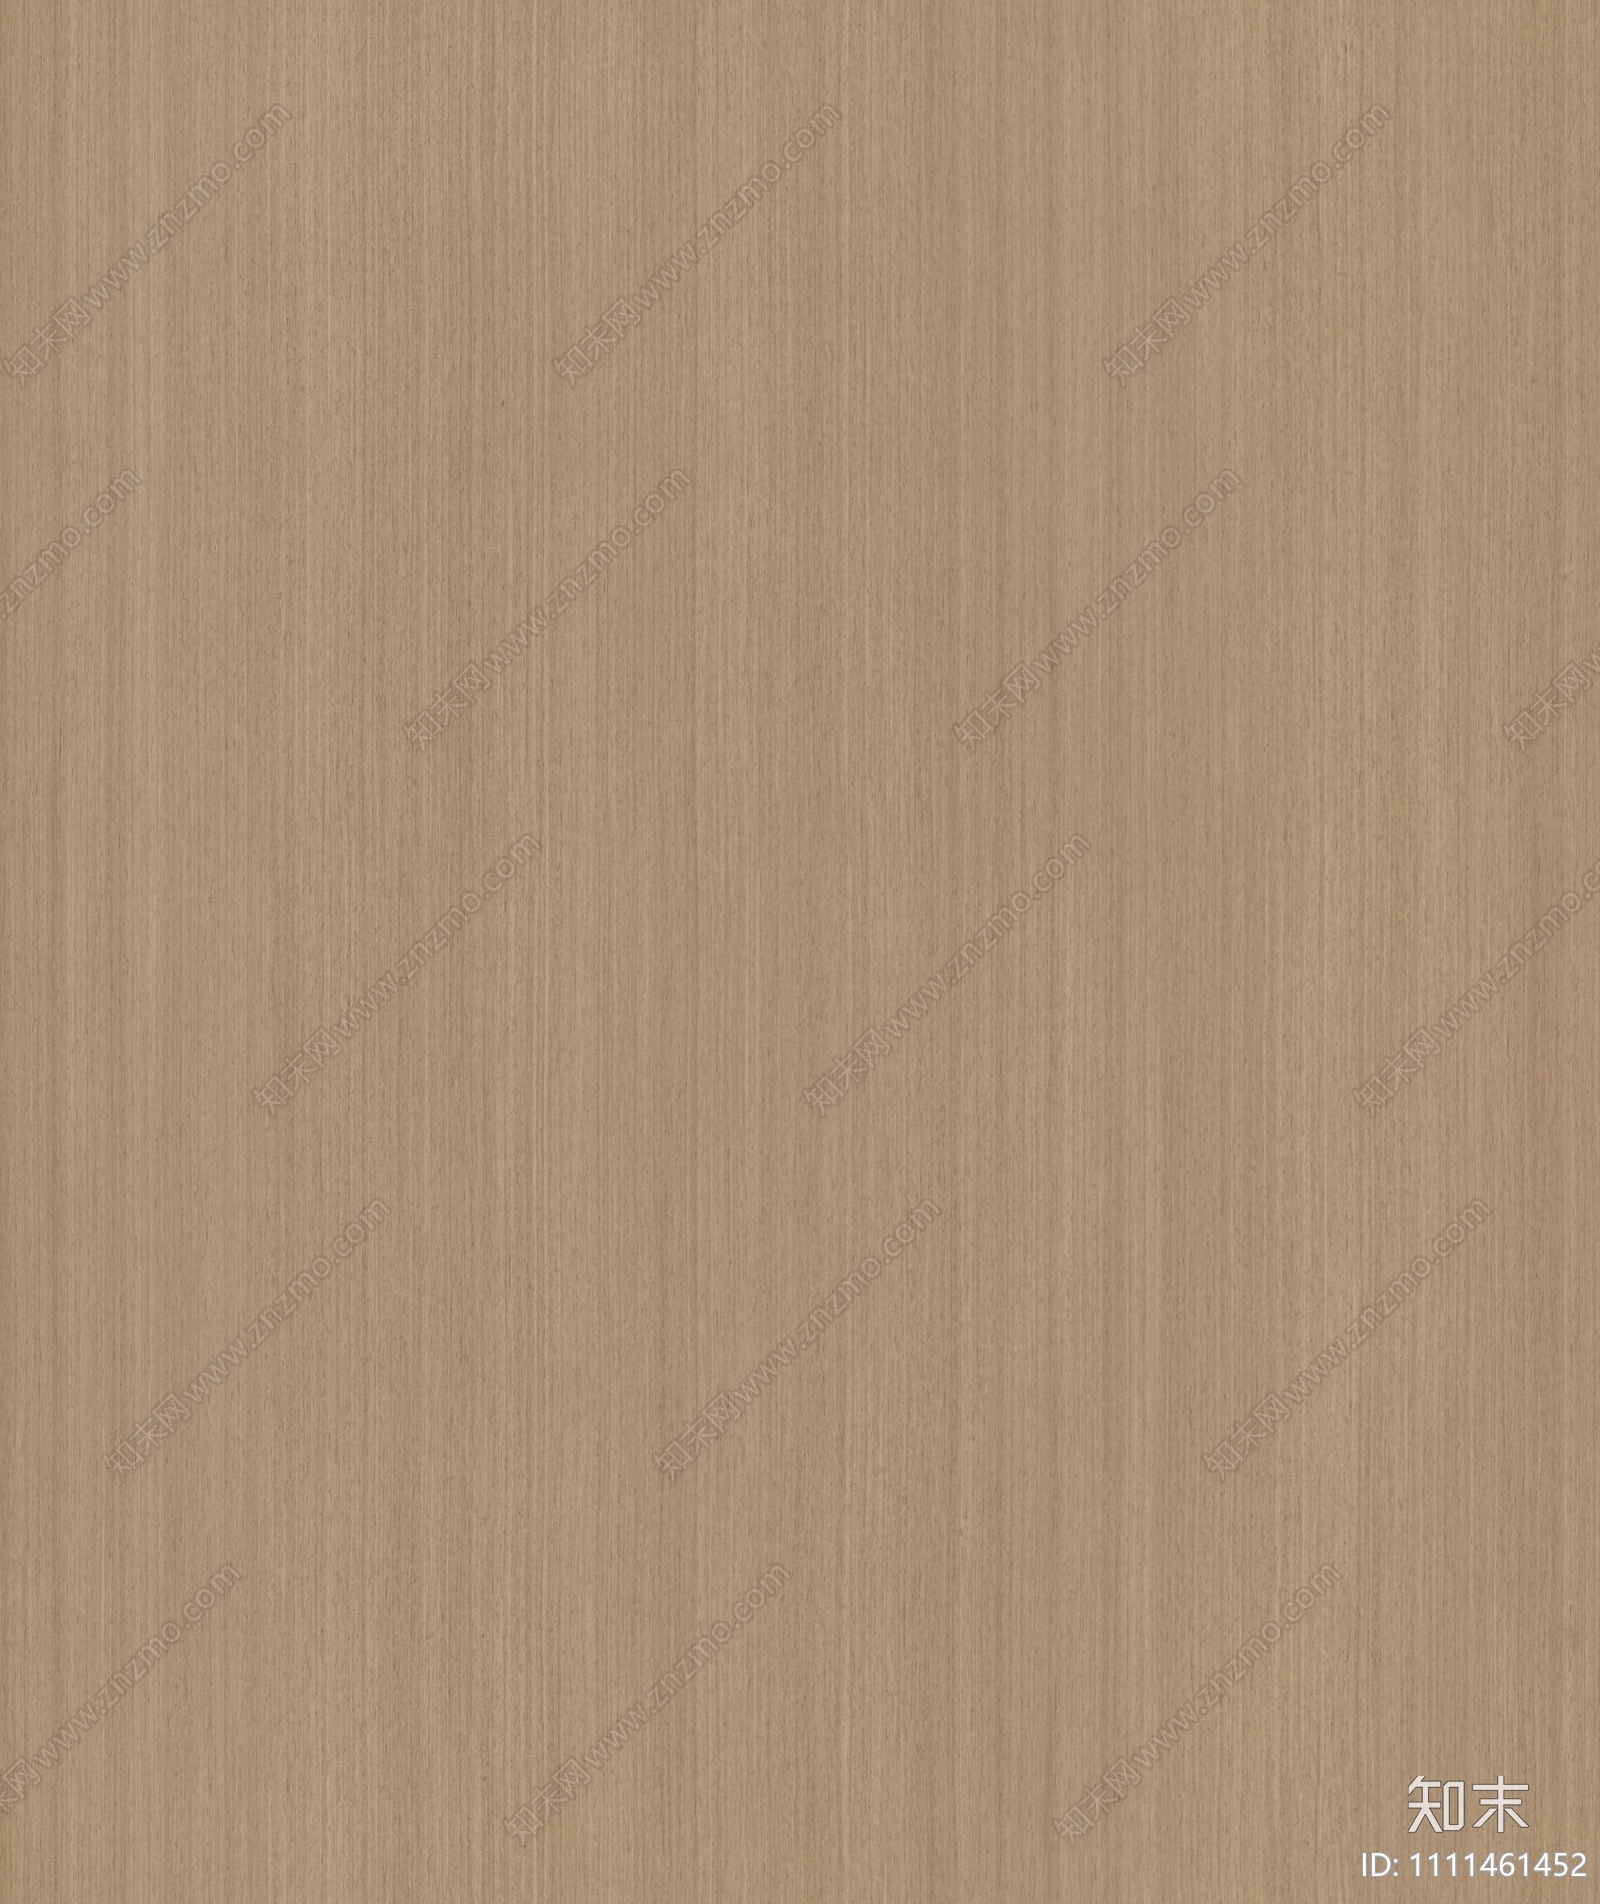 原木色木纹木饰面贴图下载【ID:1111461452】